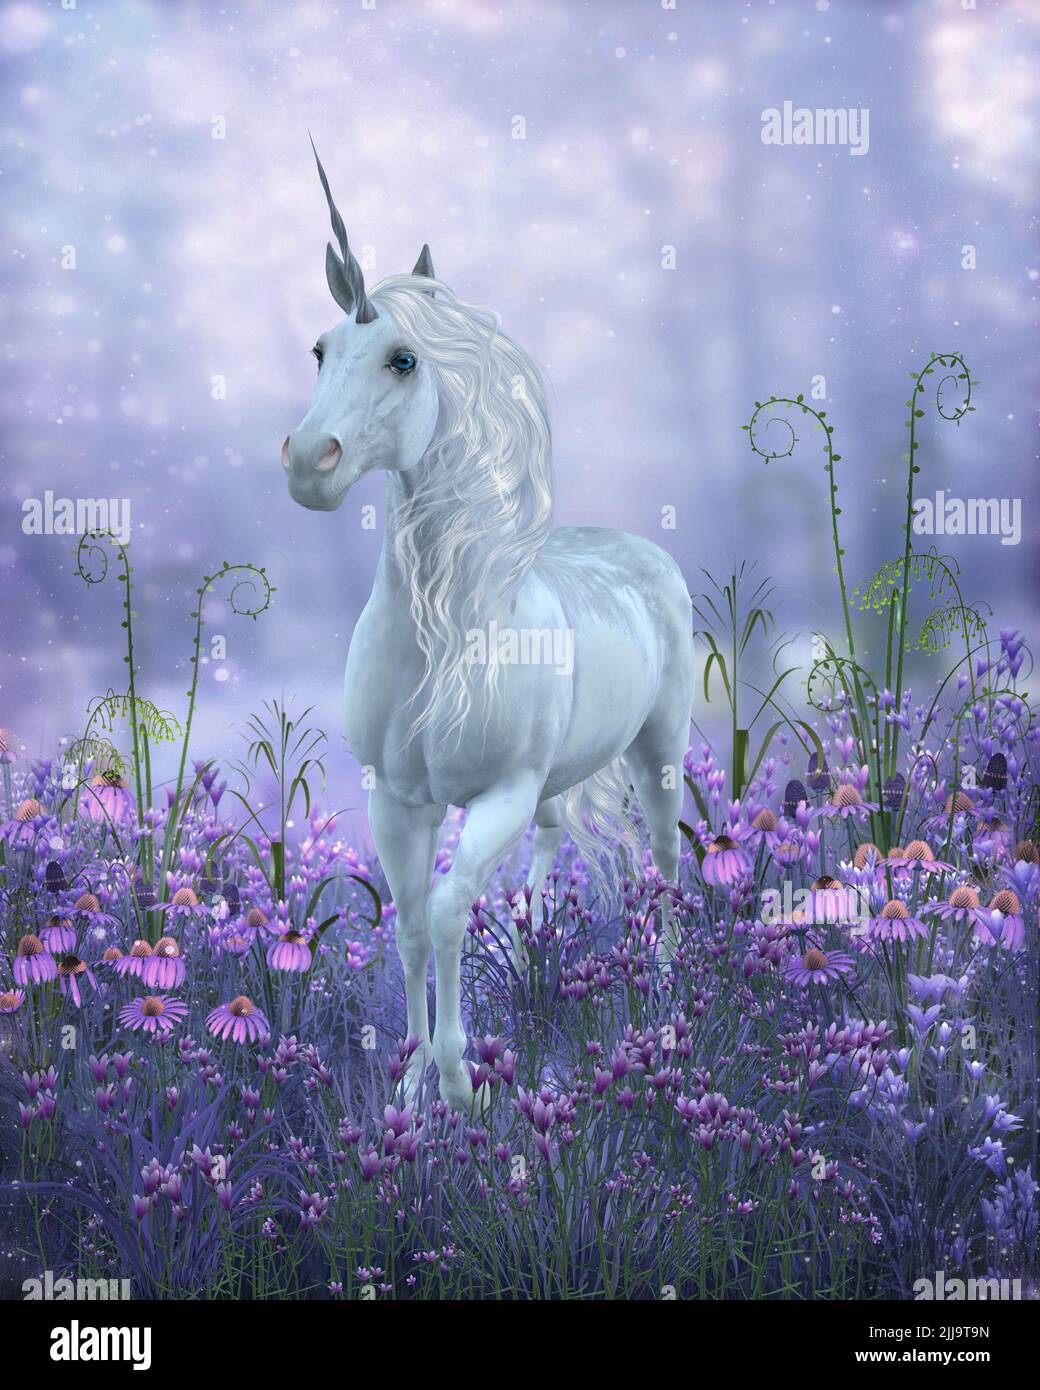 Un legendario unicornio blanco rebosa a través de flores de campana púrpura en un paseo por el bosque mágico. Foto de stock